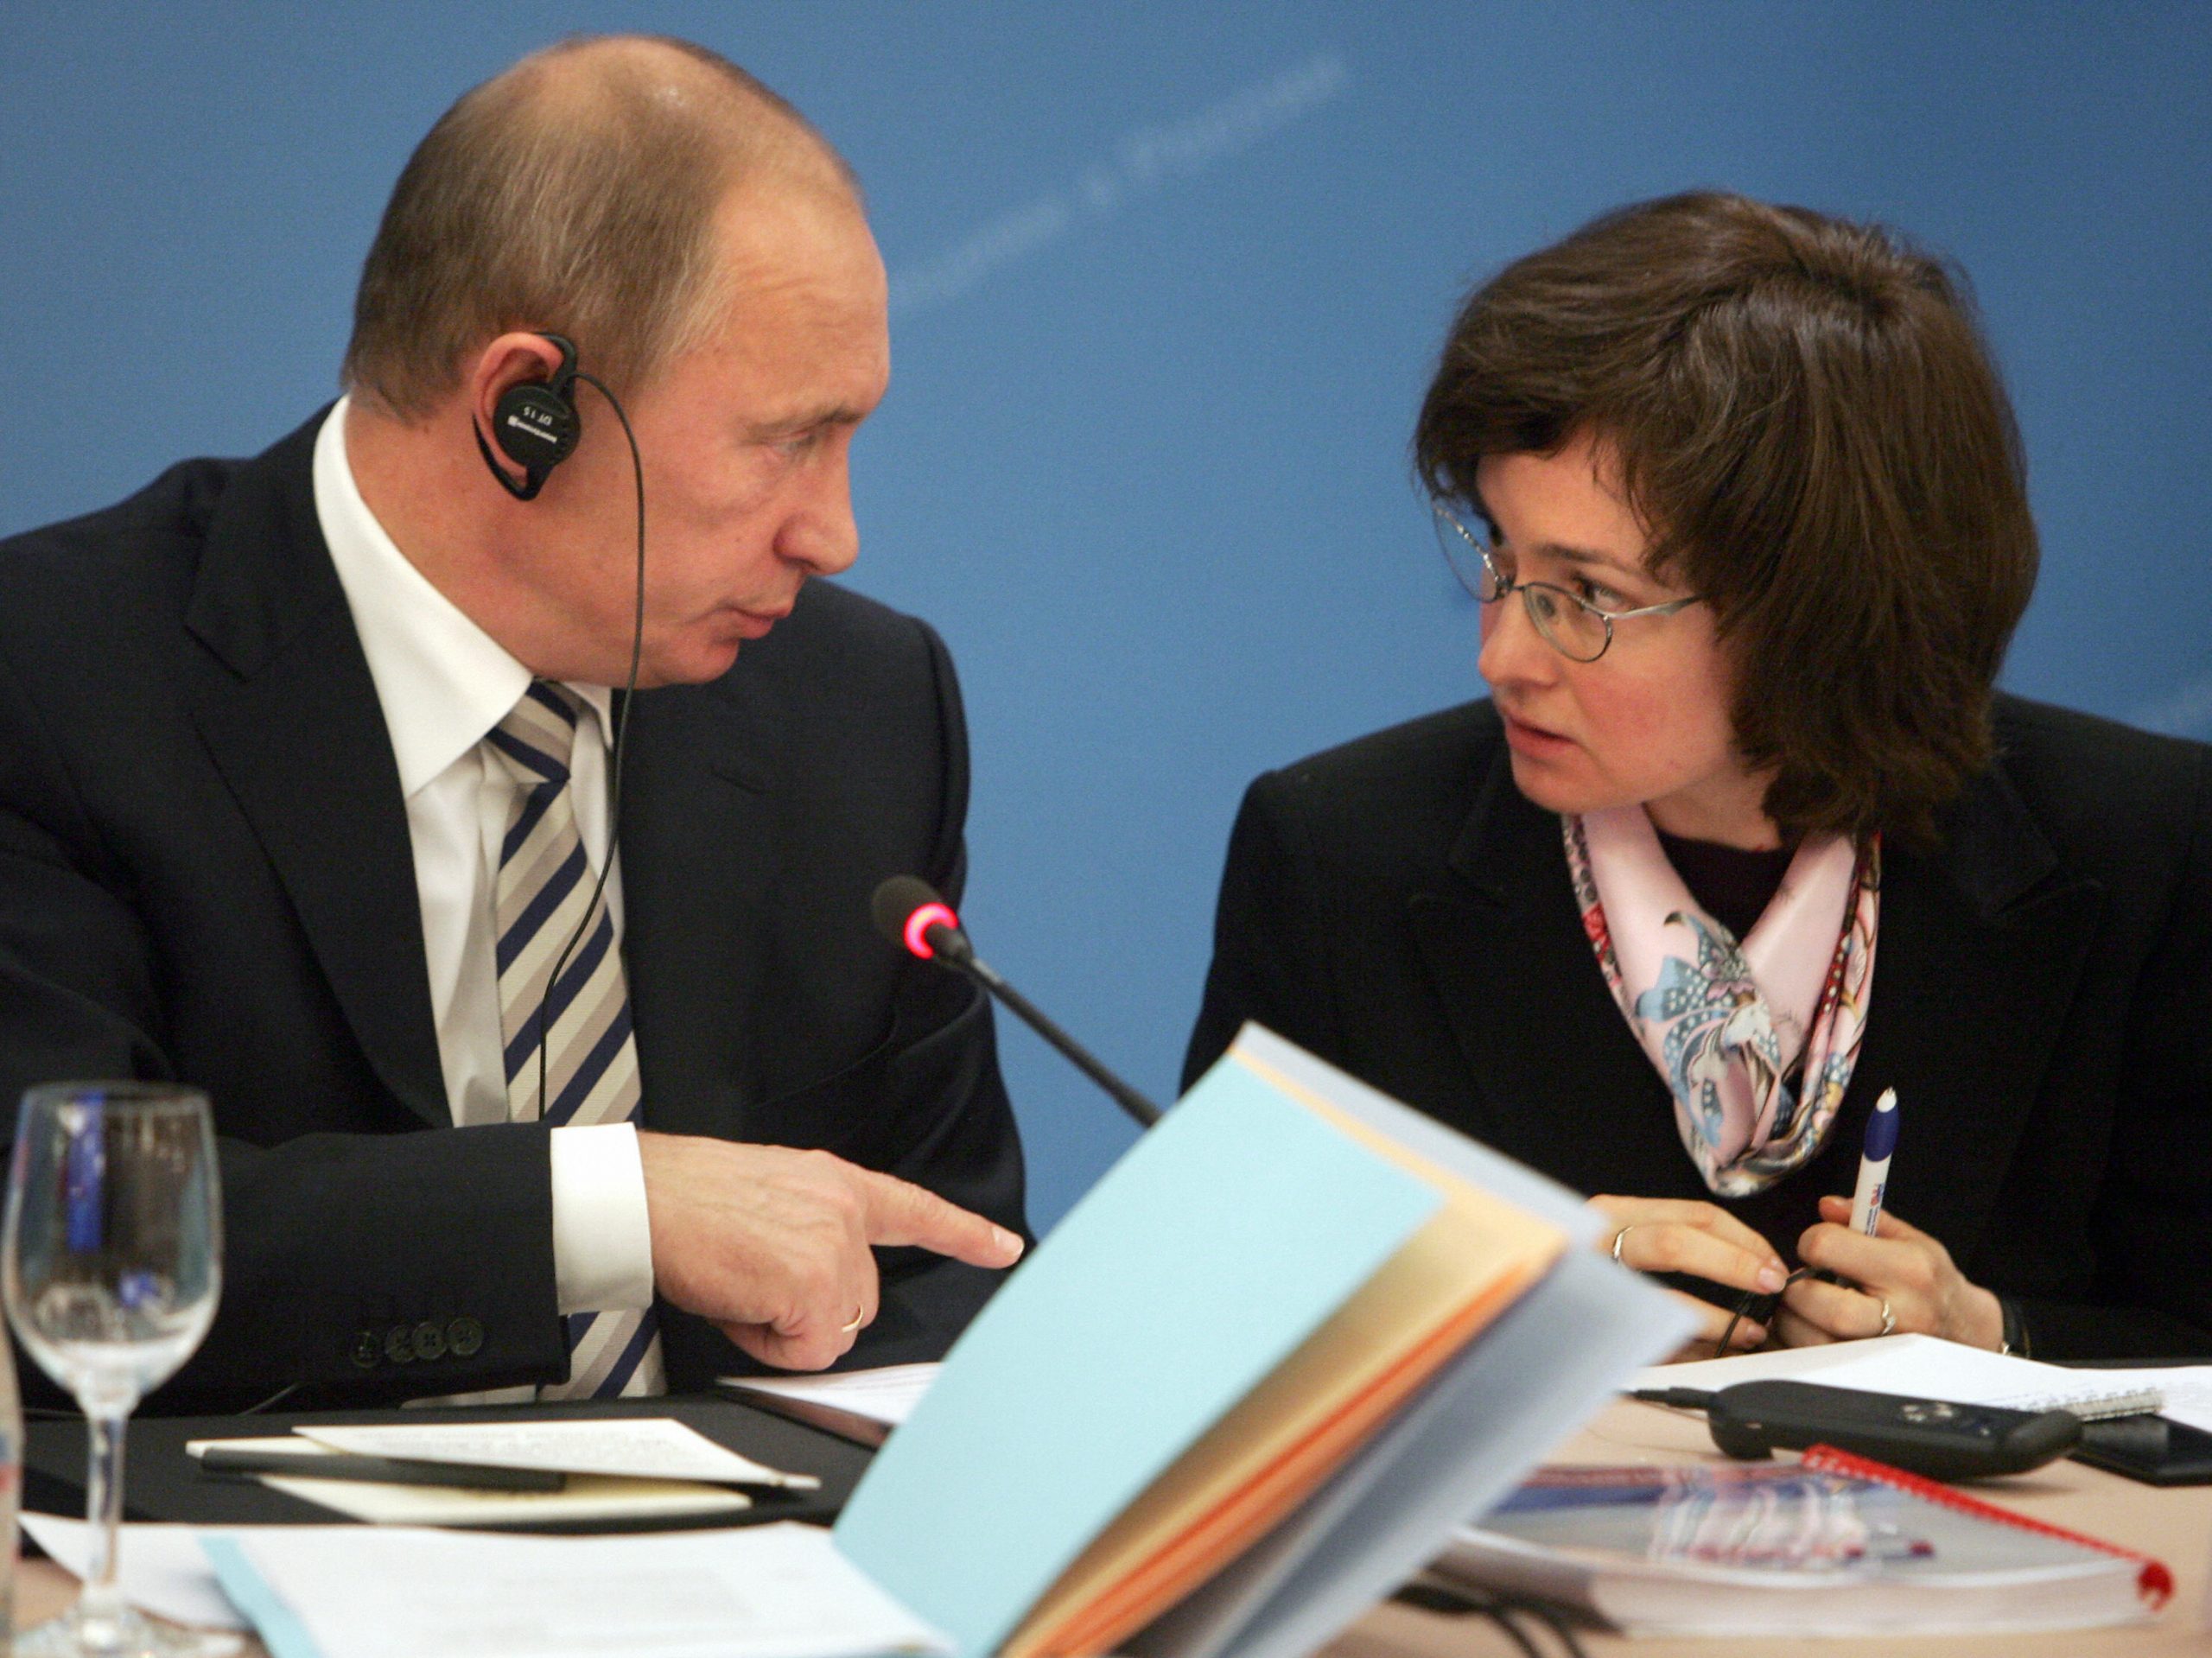  Gruaja që fshihet pas Putin   eksperti  Kush është truri i vërtetë i luftës